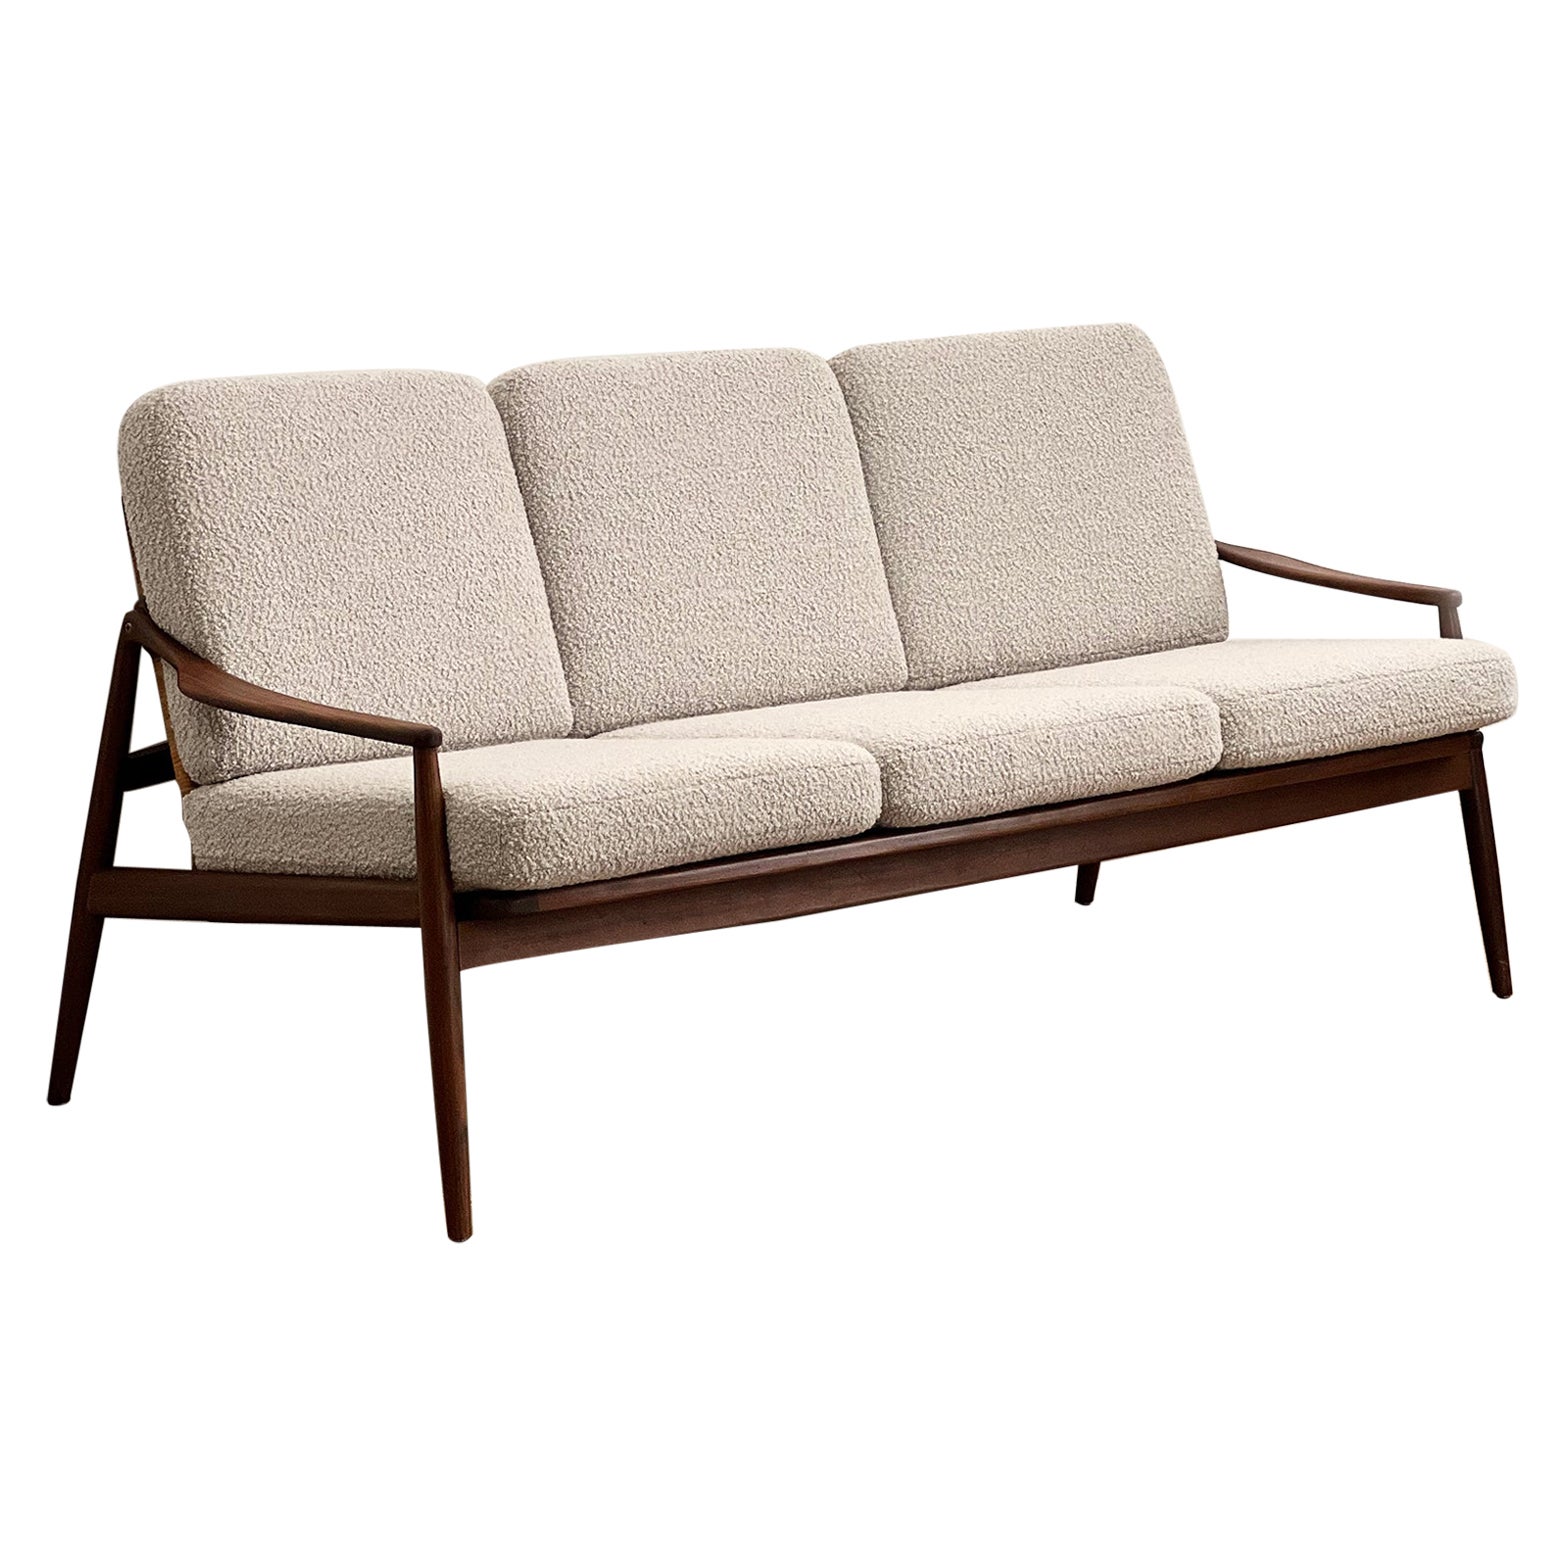 Mid-Century-Sofa oder Couch aus Teakholz von Hartmut Lohmeyer, deutsches Design, 1950er Jahre